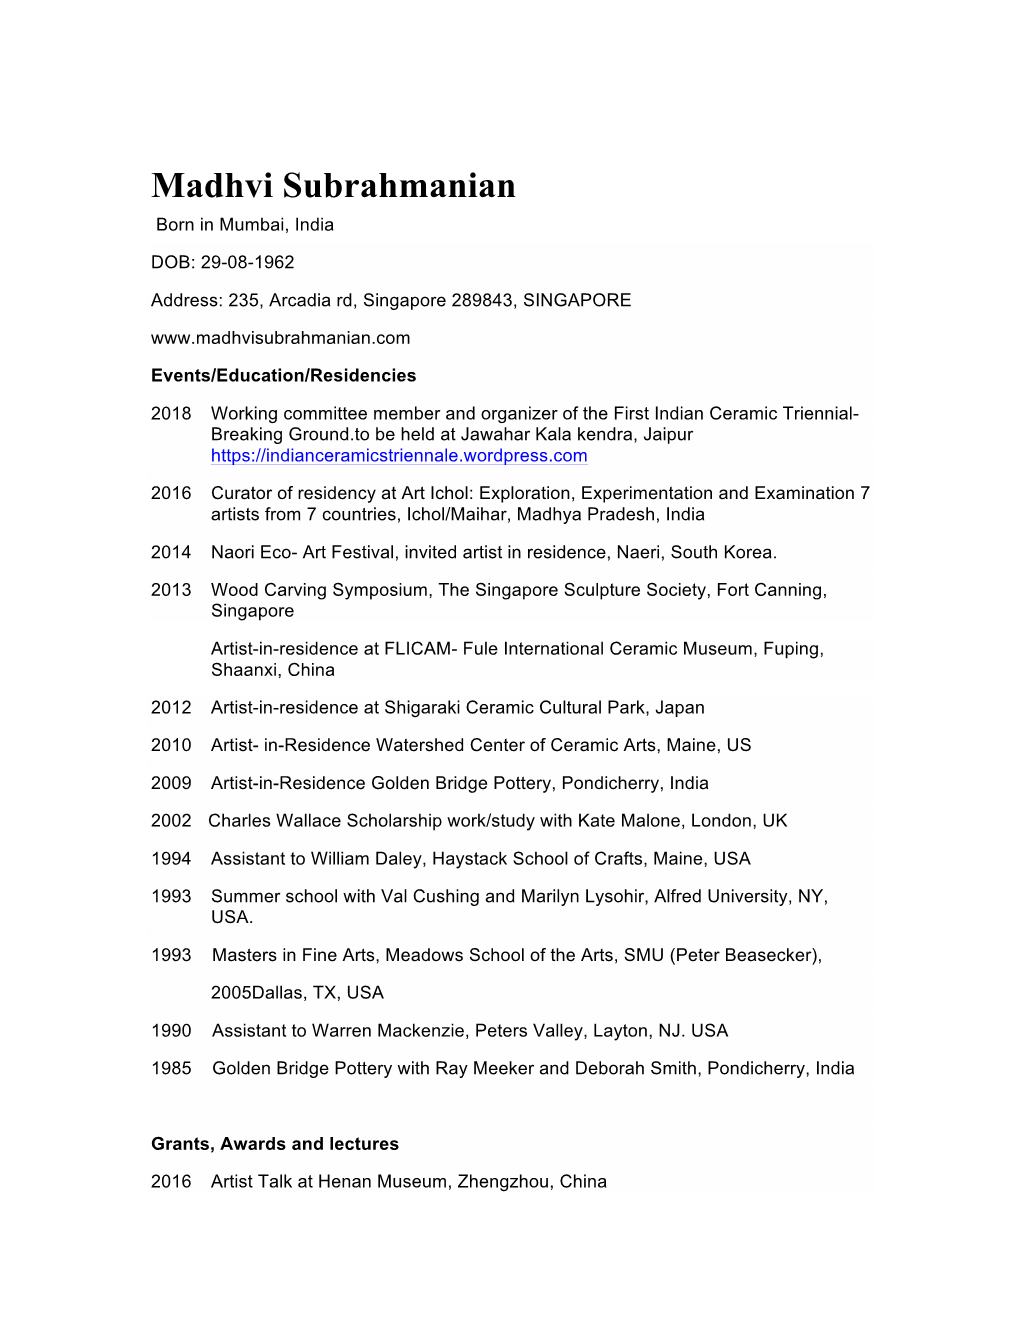 Madhvi Subrahmanian Born in Mumbai, India